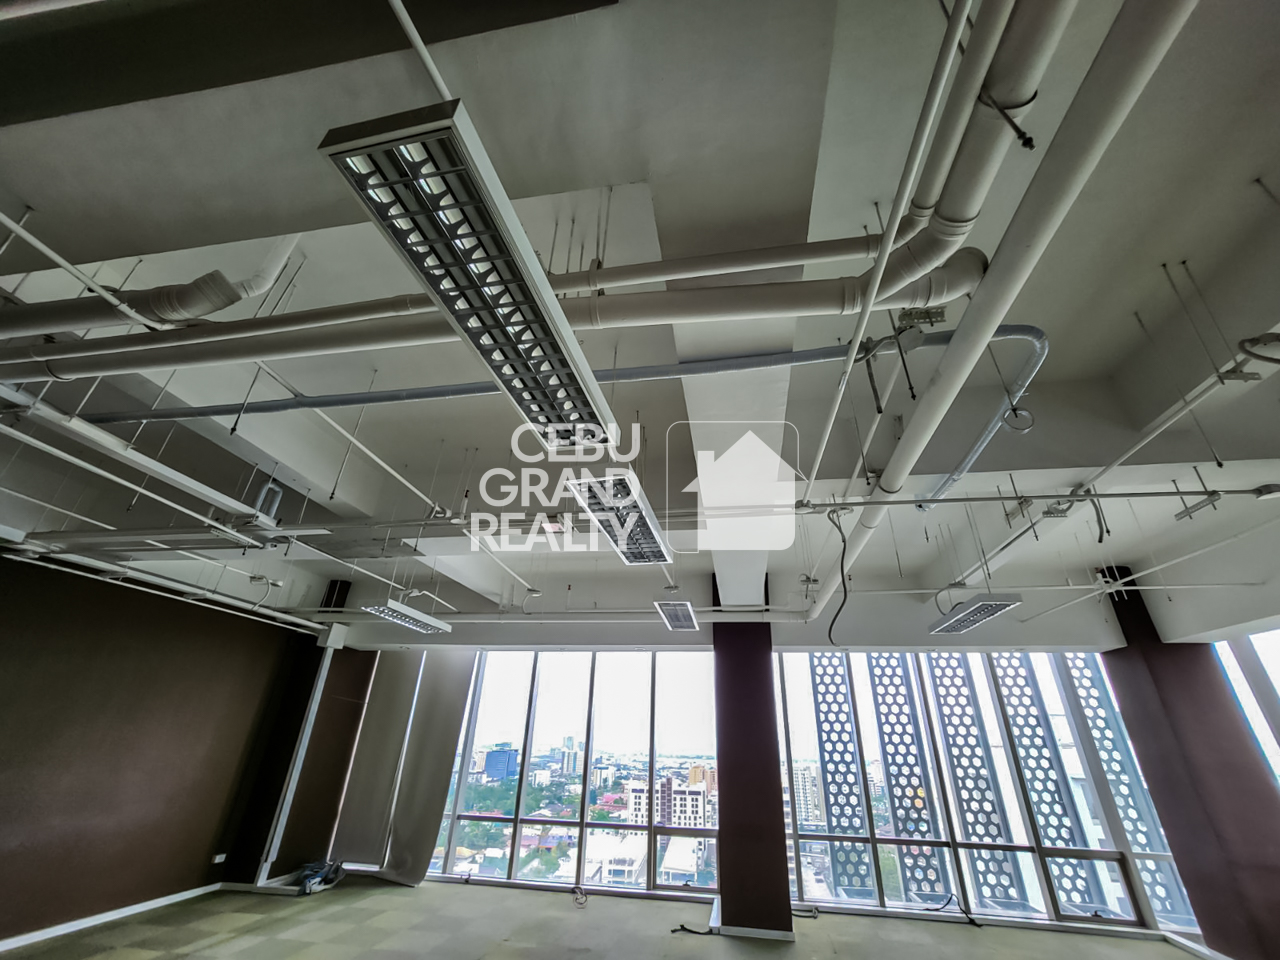 SC26 99 SqM Office Space for Sale in Cebu IT Park - Cebu Grand Realty (2)